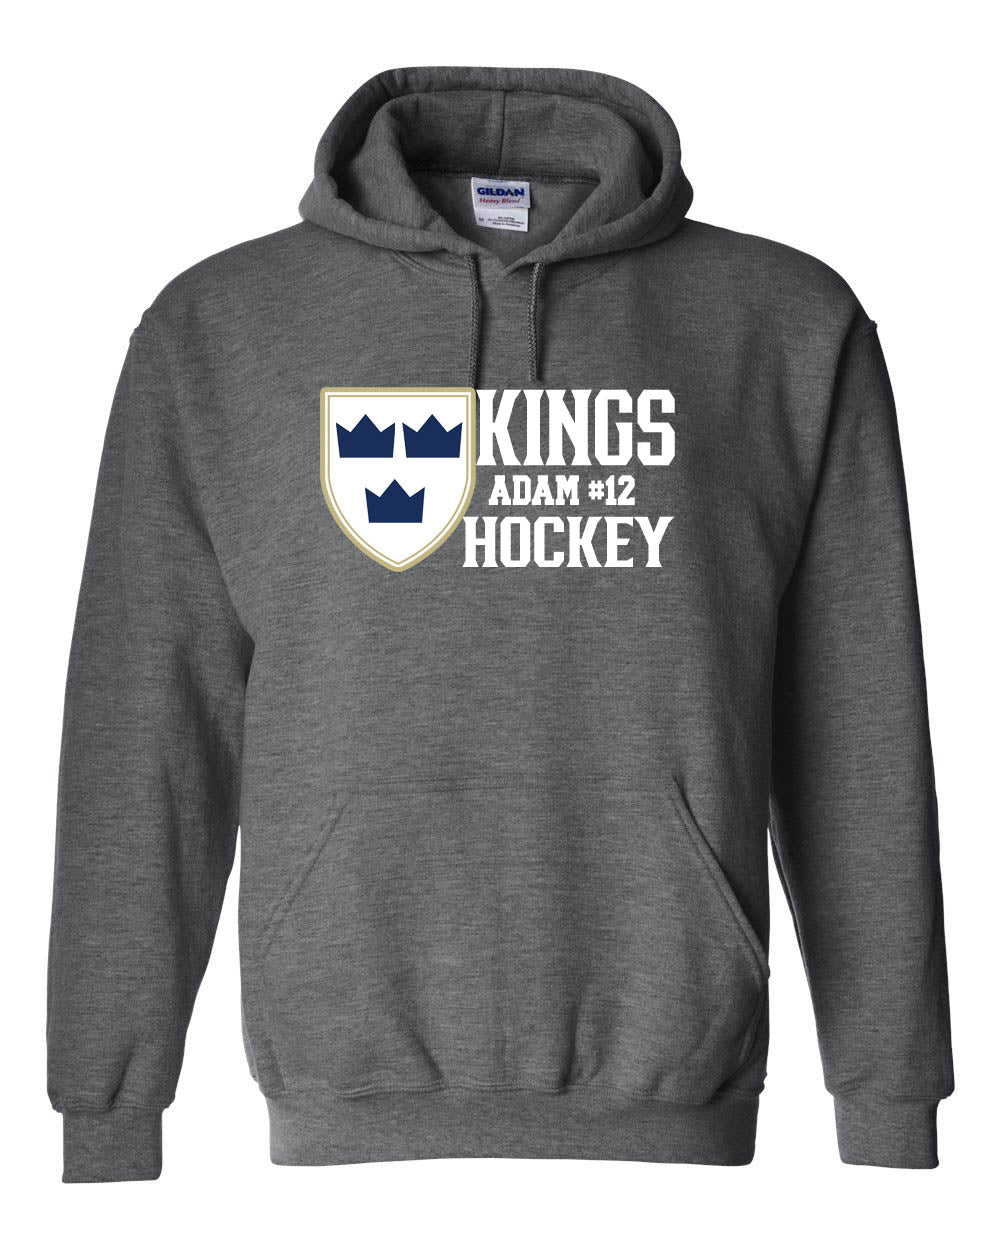 Kings Hockey Design 4 Hooded Sweatshirt